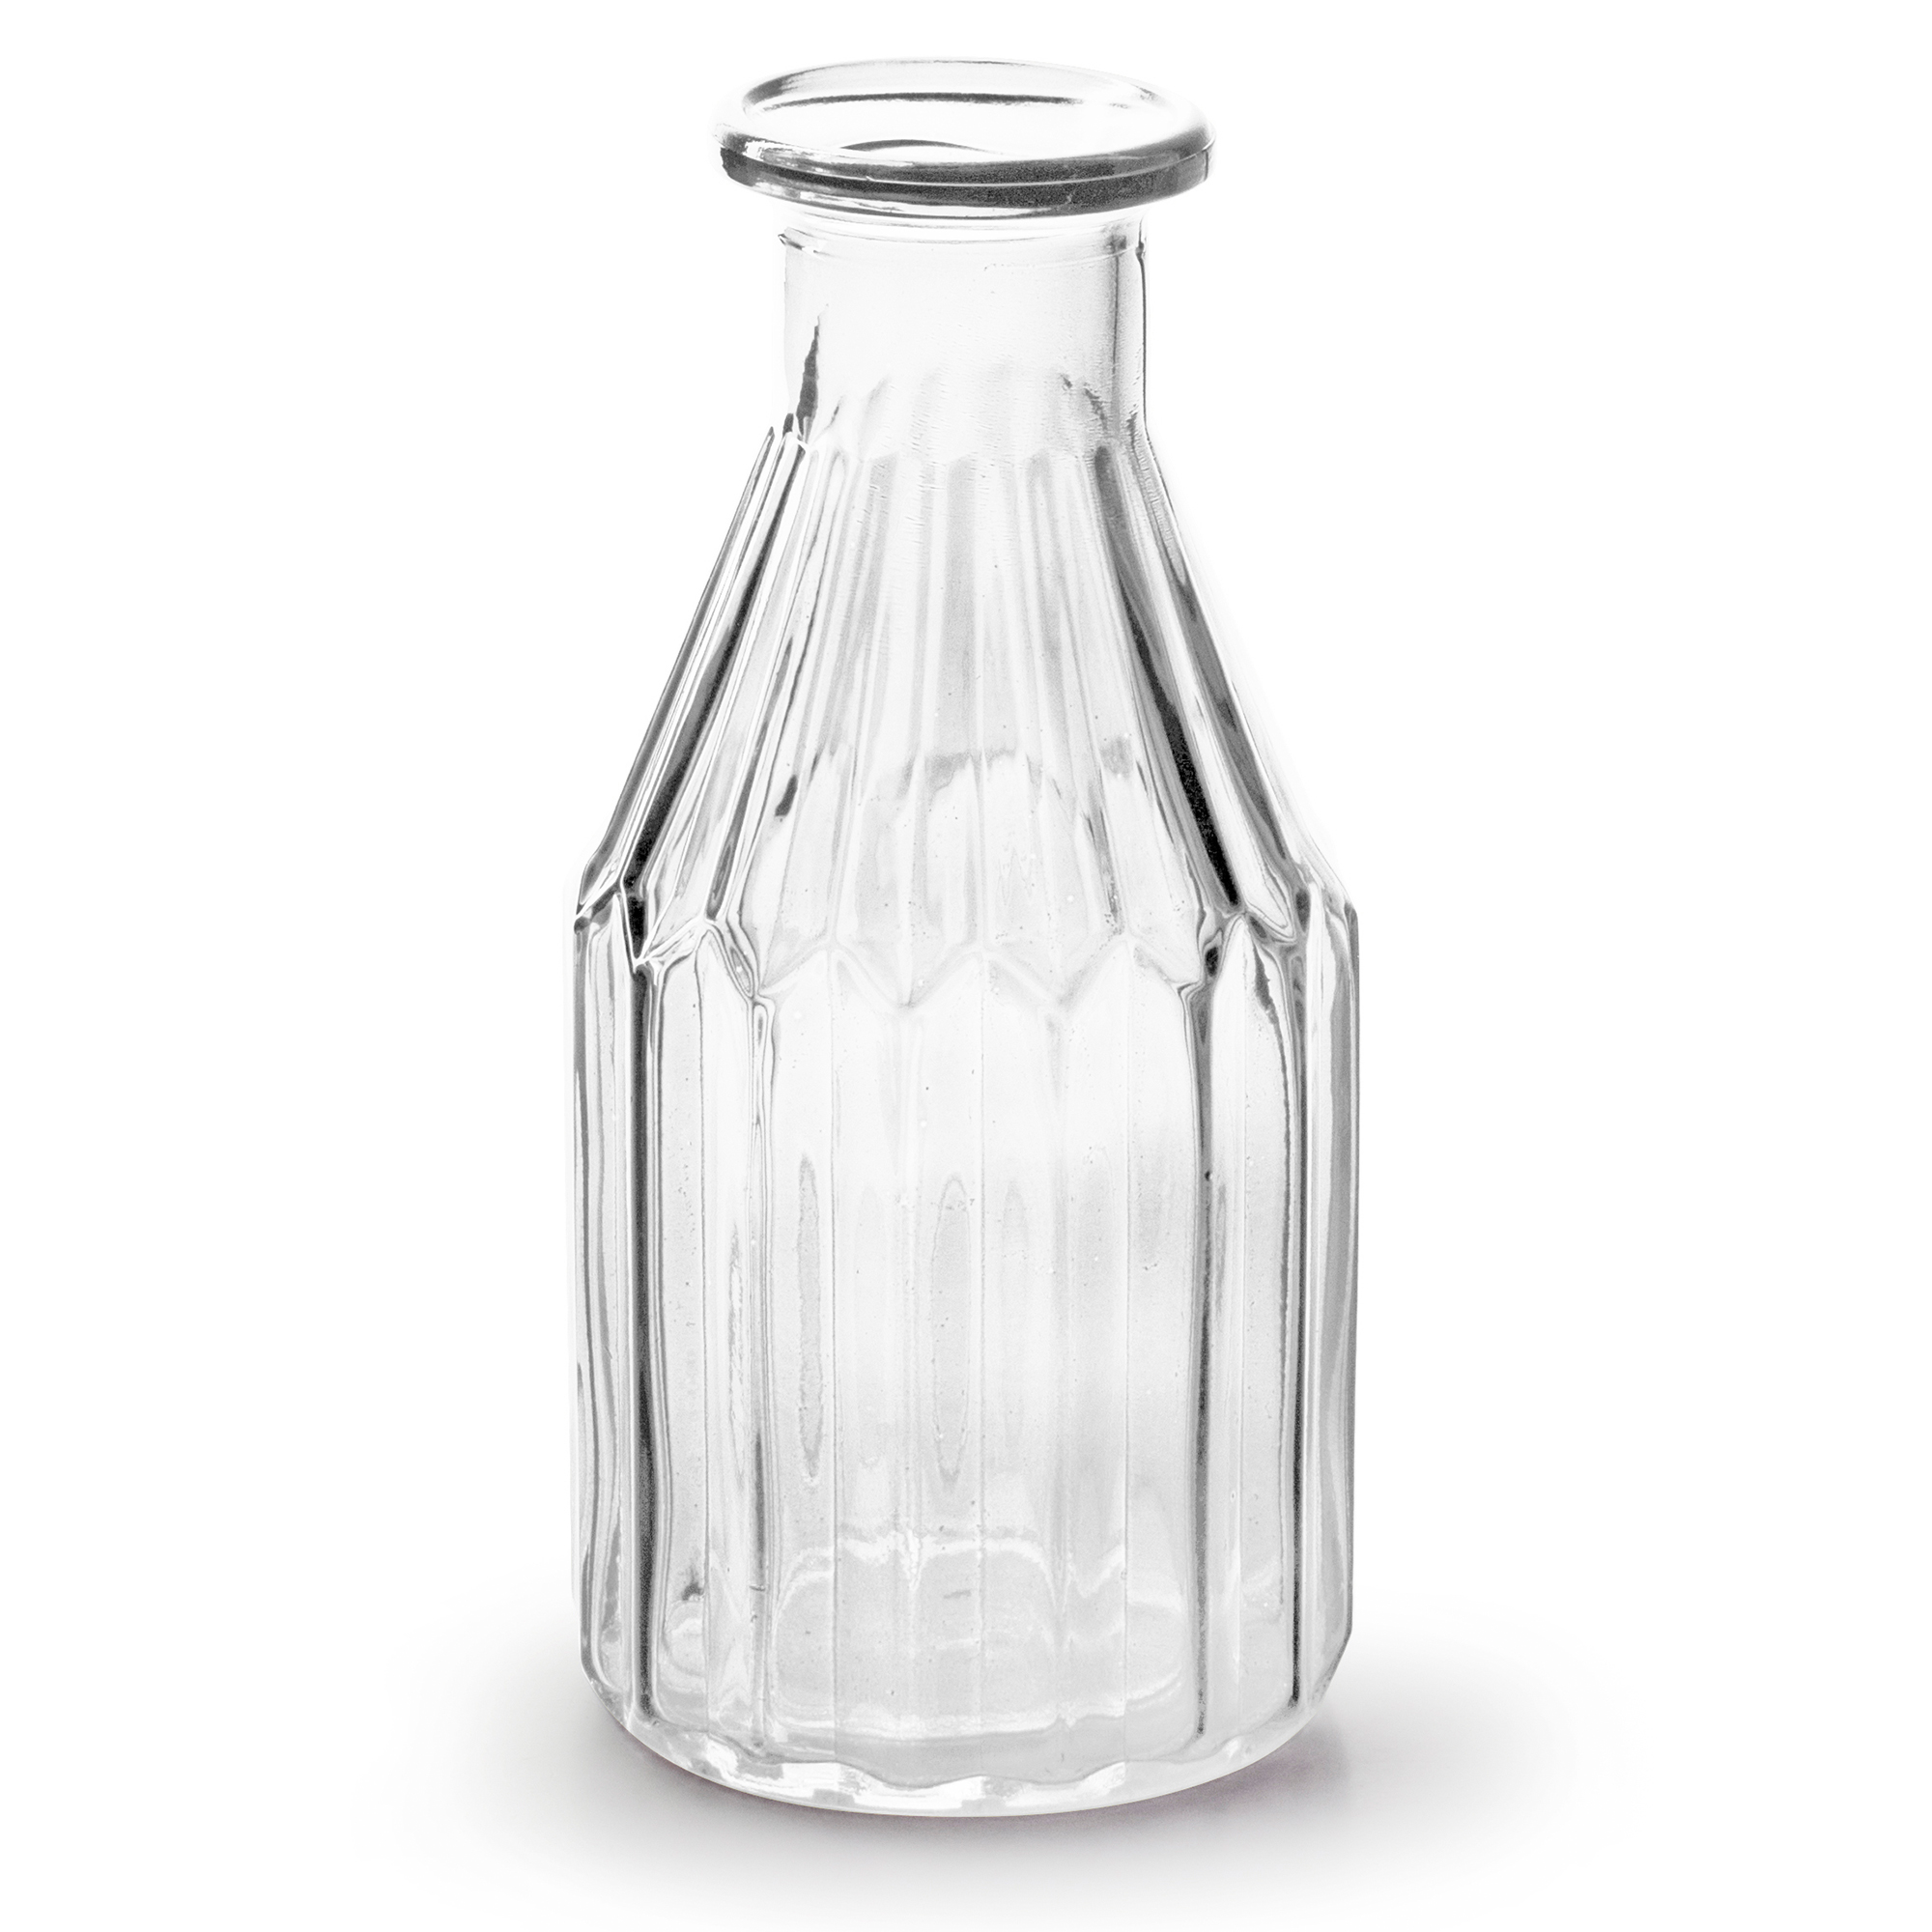 12 Glasfläschchen Landhausstil H10,5cm Glasvase Flasche Vasen Tischdekoration 